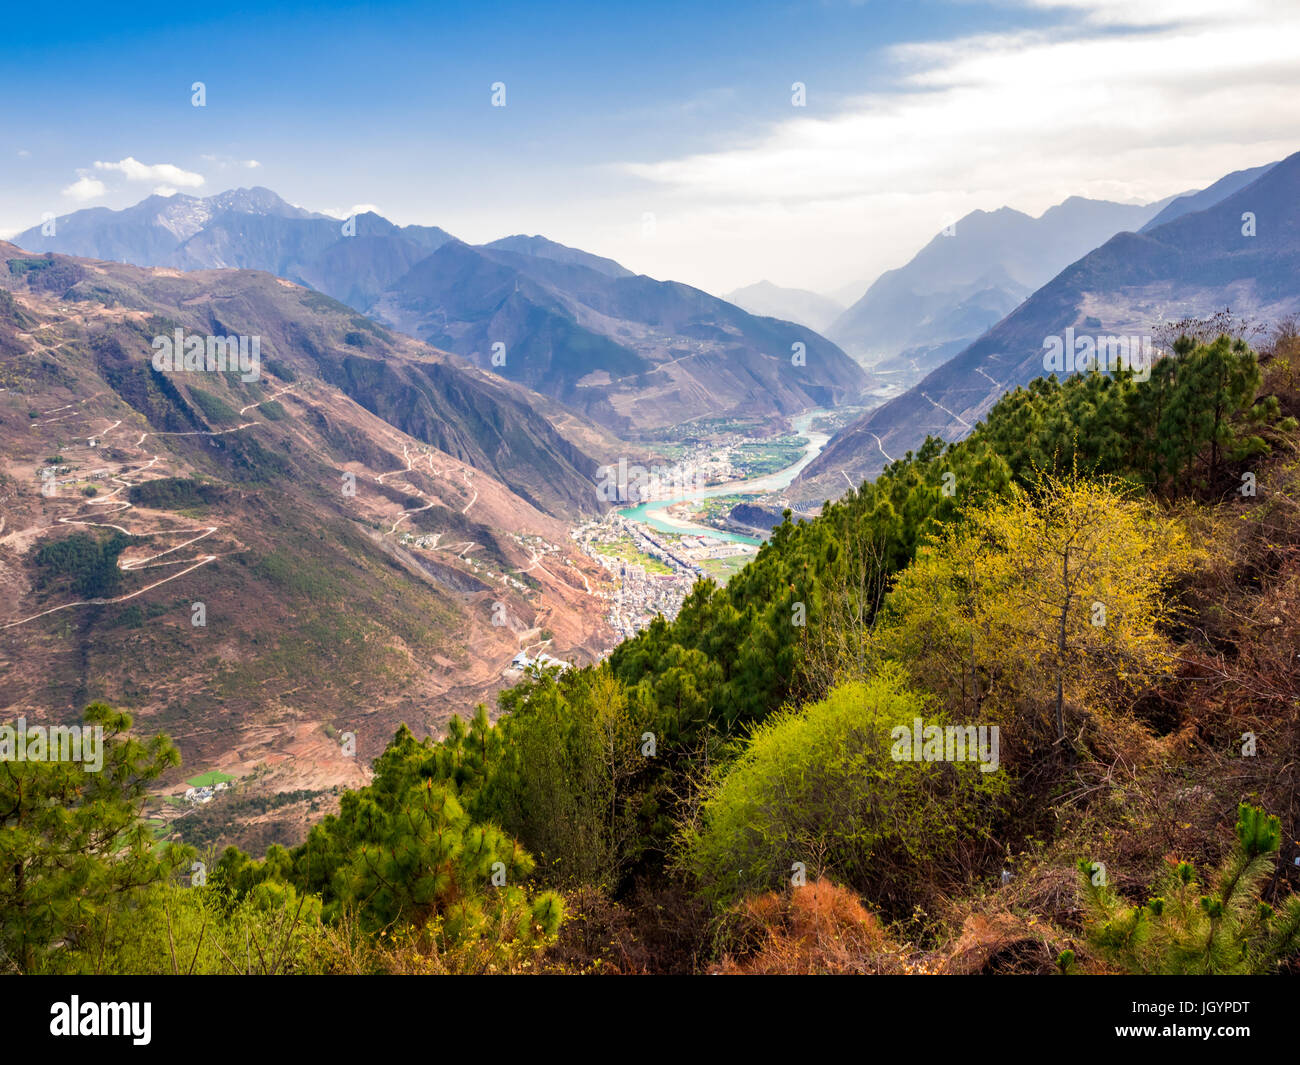 Luftaufnahme von Dorf und Fluss im Tal des Hochgebirges in Sichuan, China Stockfoto